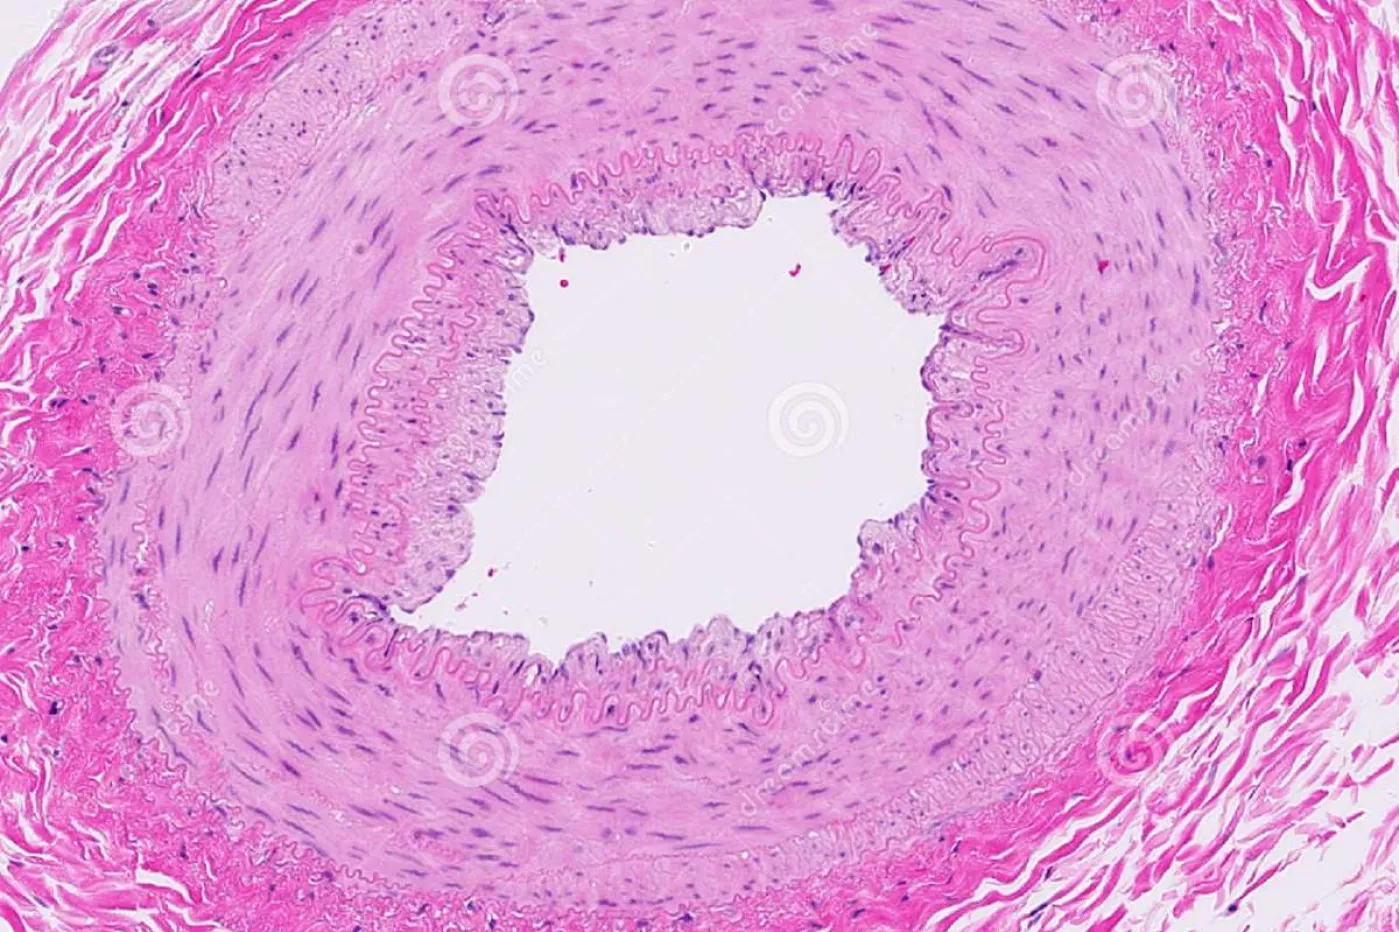 arteria renal